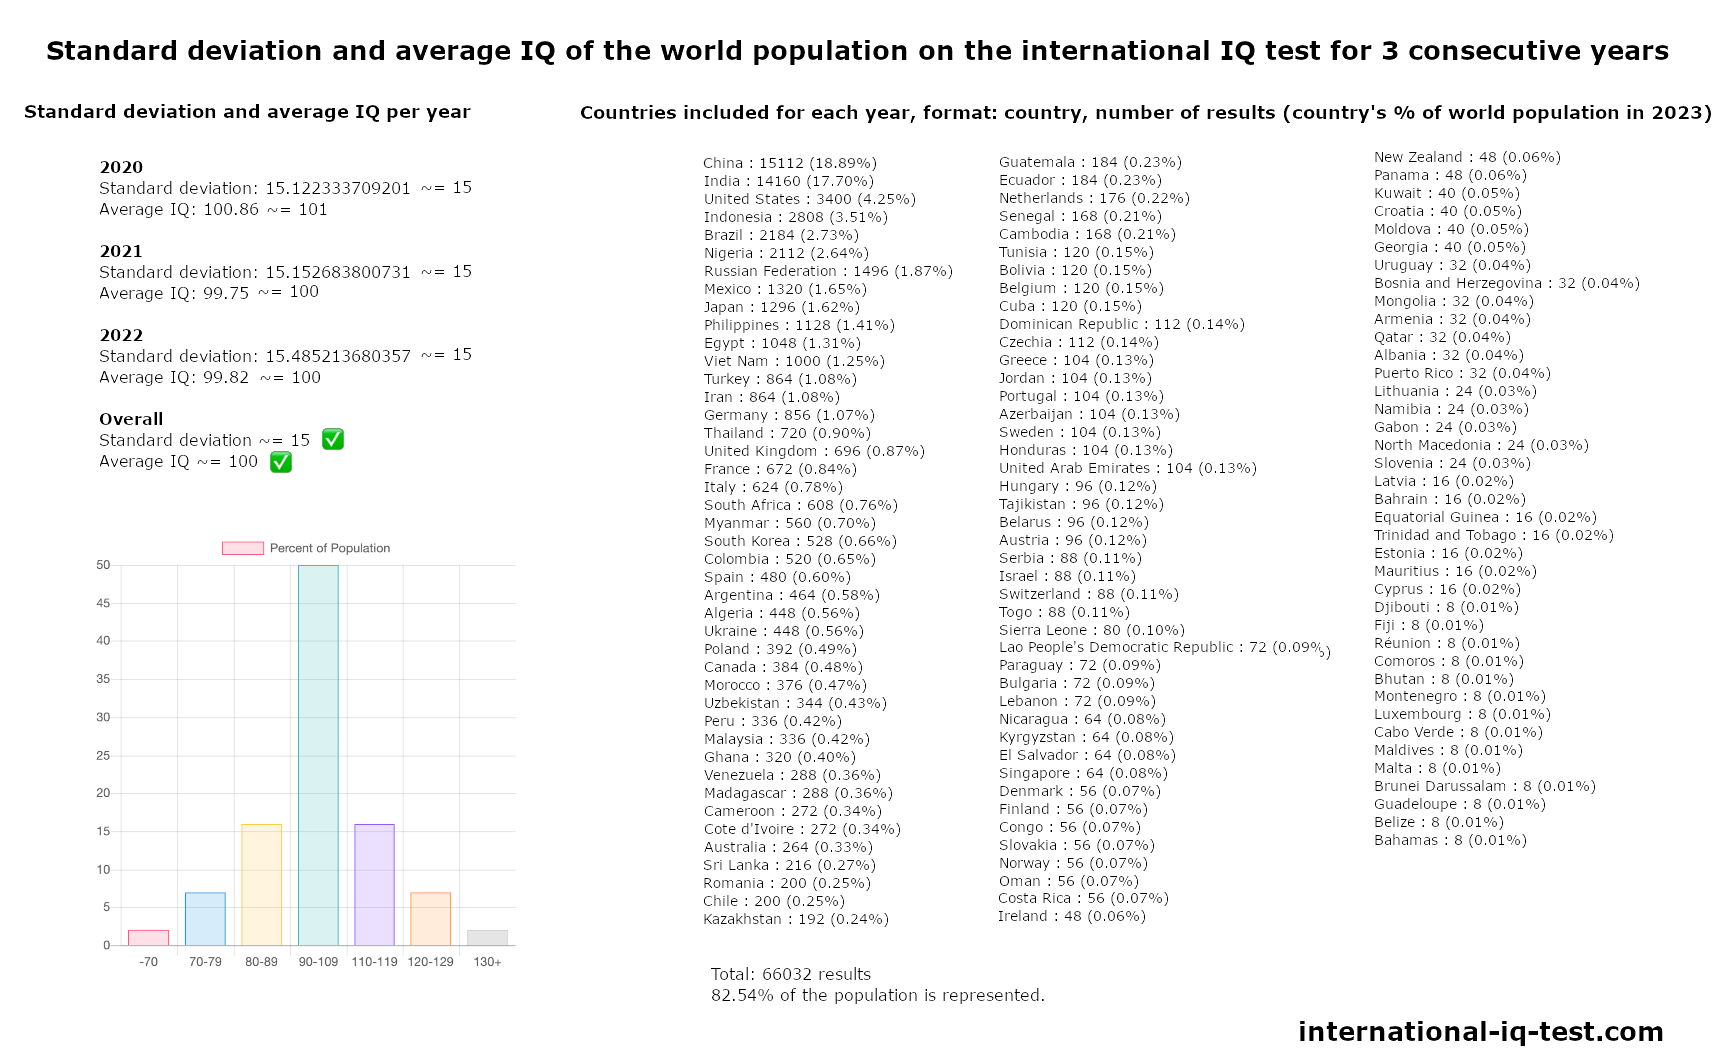 Standardabweichung und durchschnittlicher IQ der Weltbevölkerung im internationalen IQ-Test der Jahre 2020, 2021 und 2022